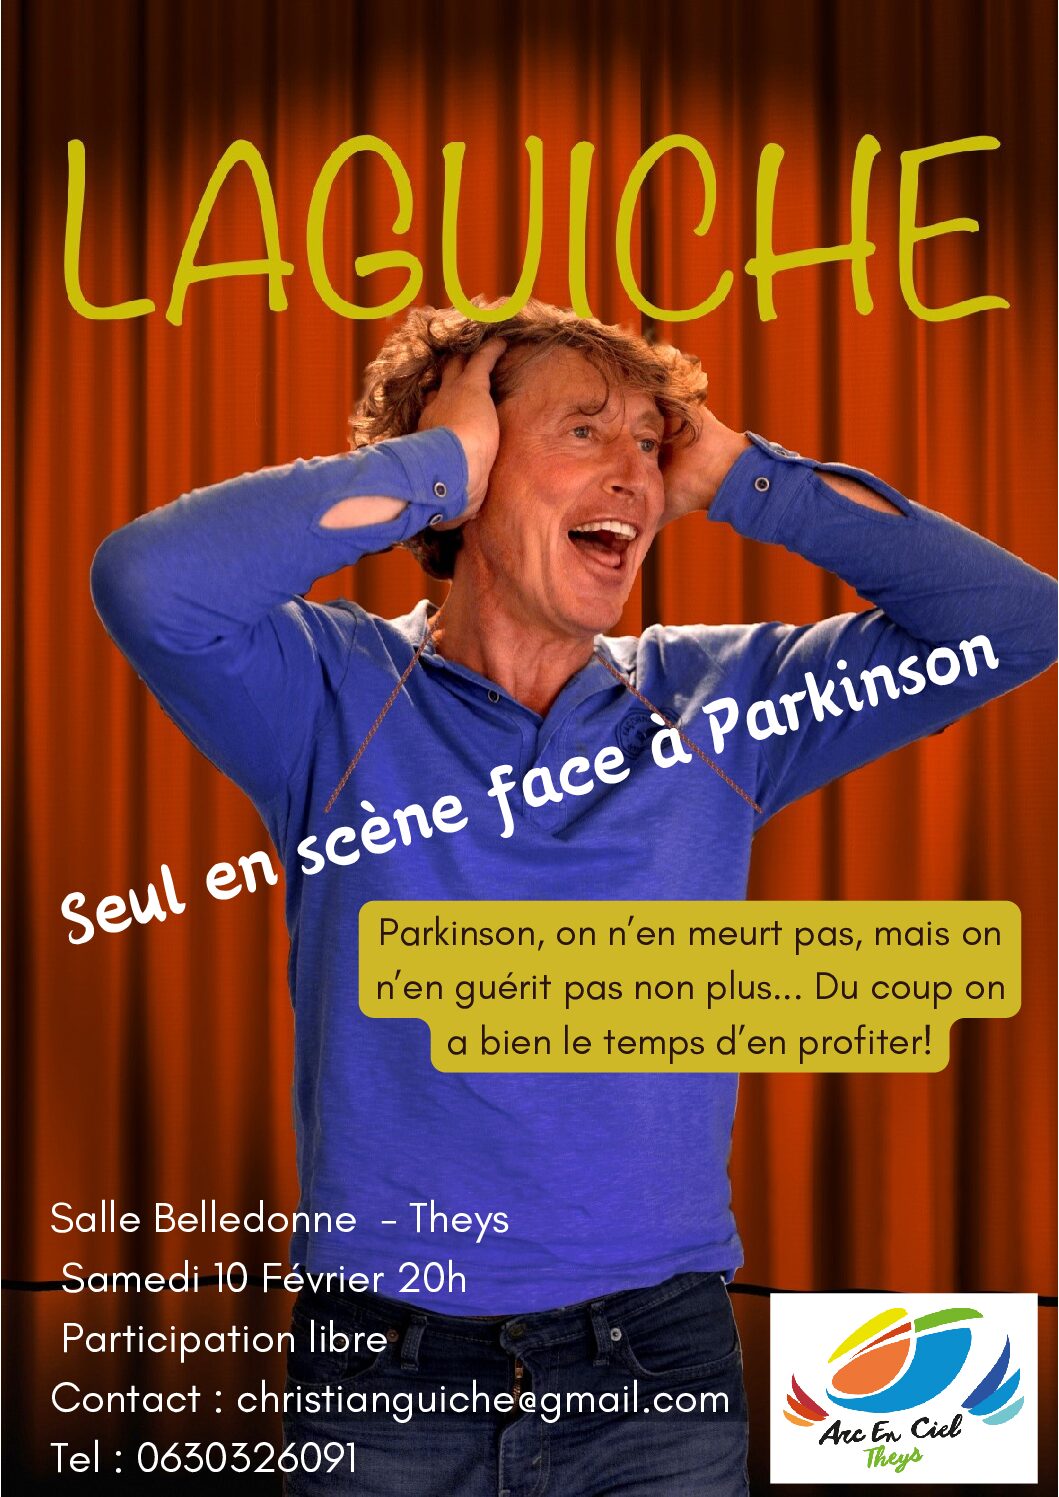 Théâtre : 10 février 2023 Salle Belledonne 20H // Laguiche Seul en scène face à Parkinson